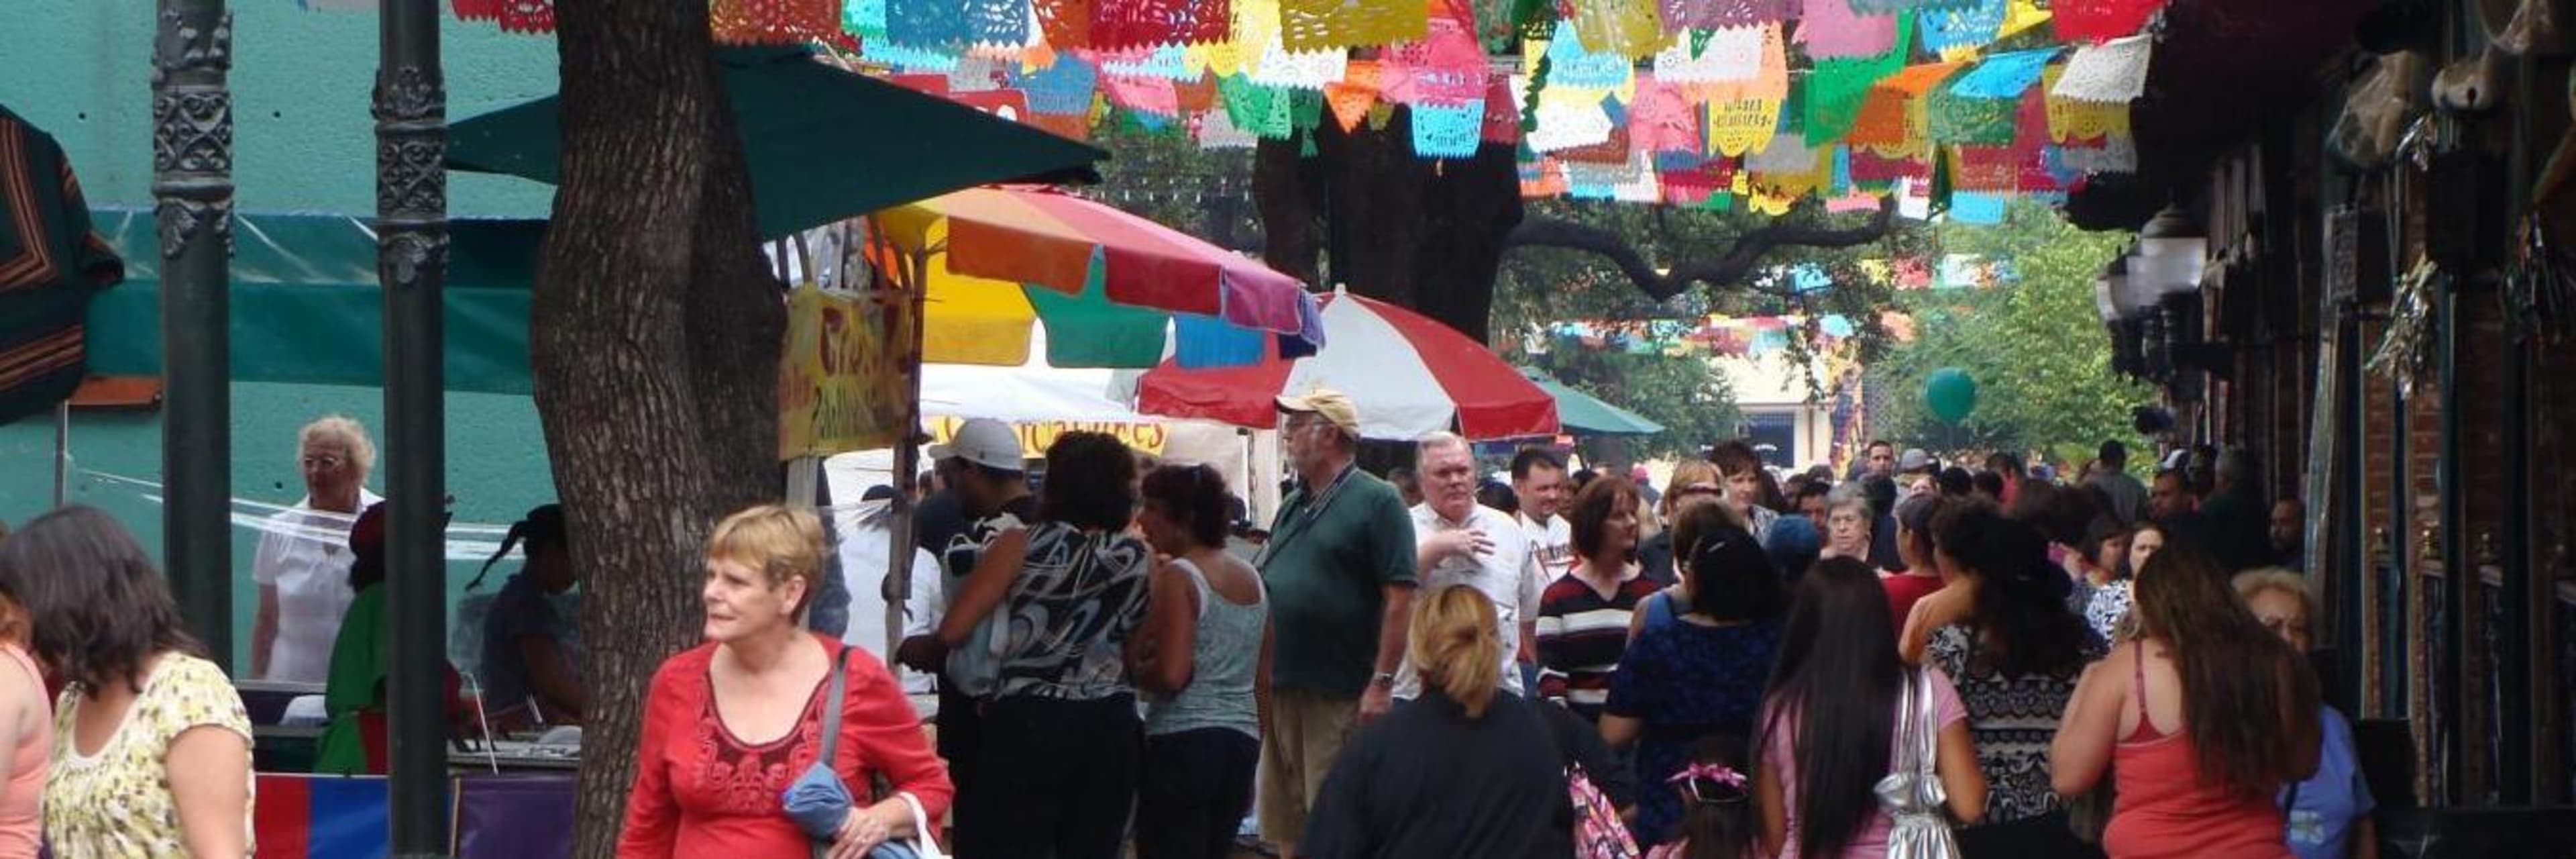 El Mercado old market square in downtown San Antonio.